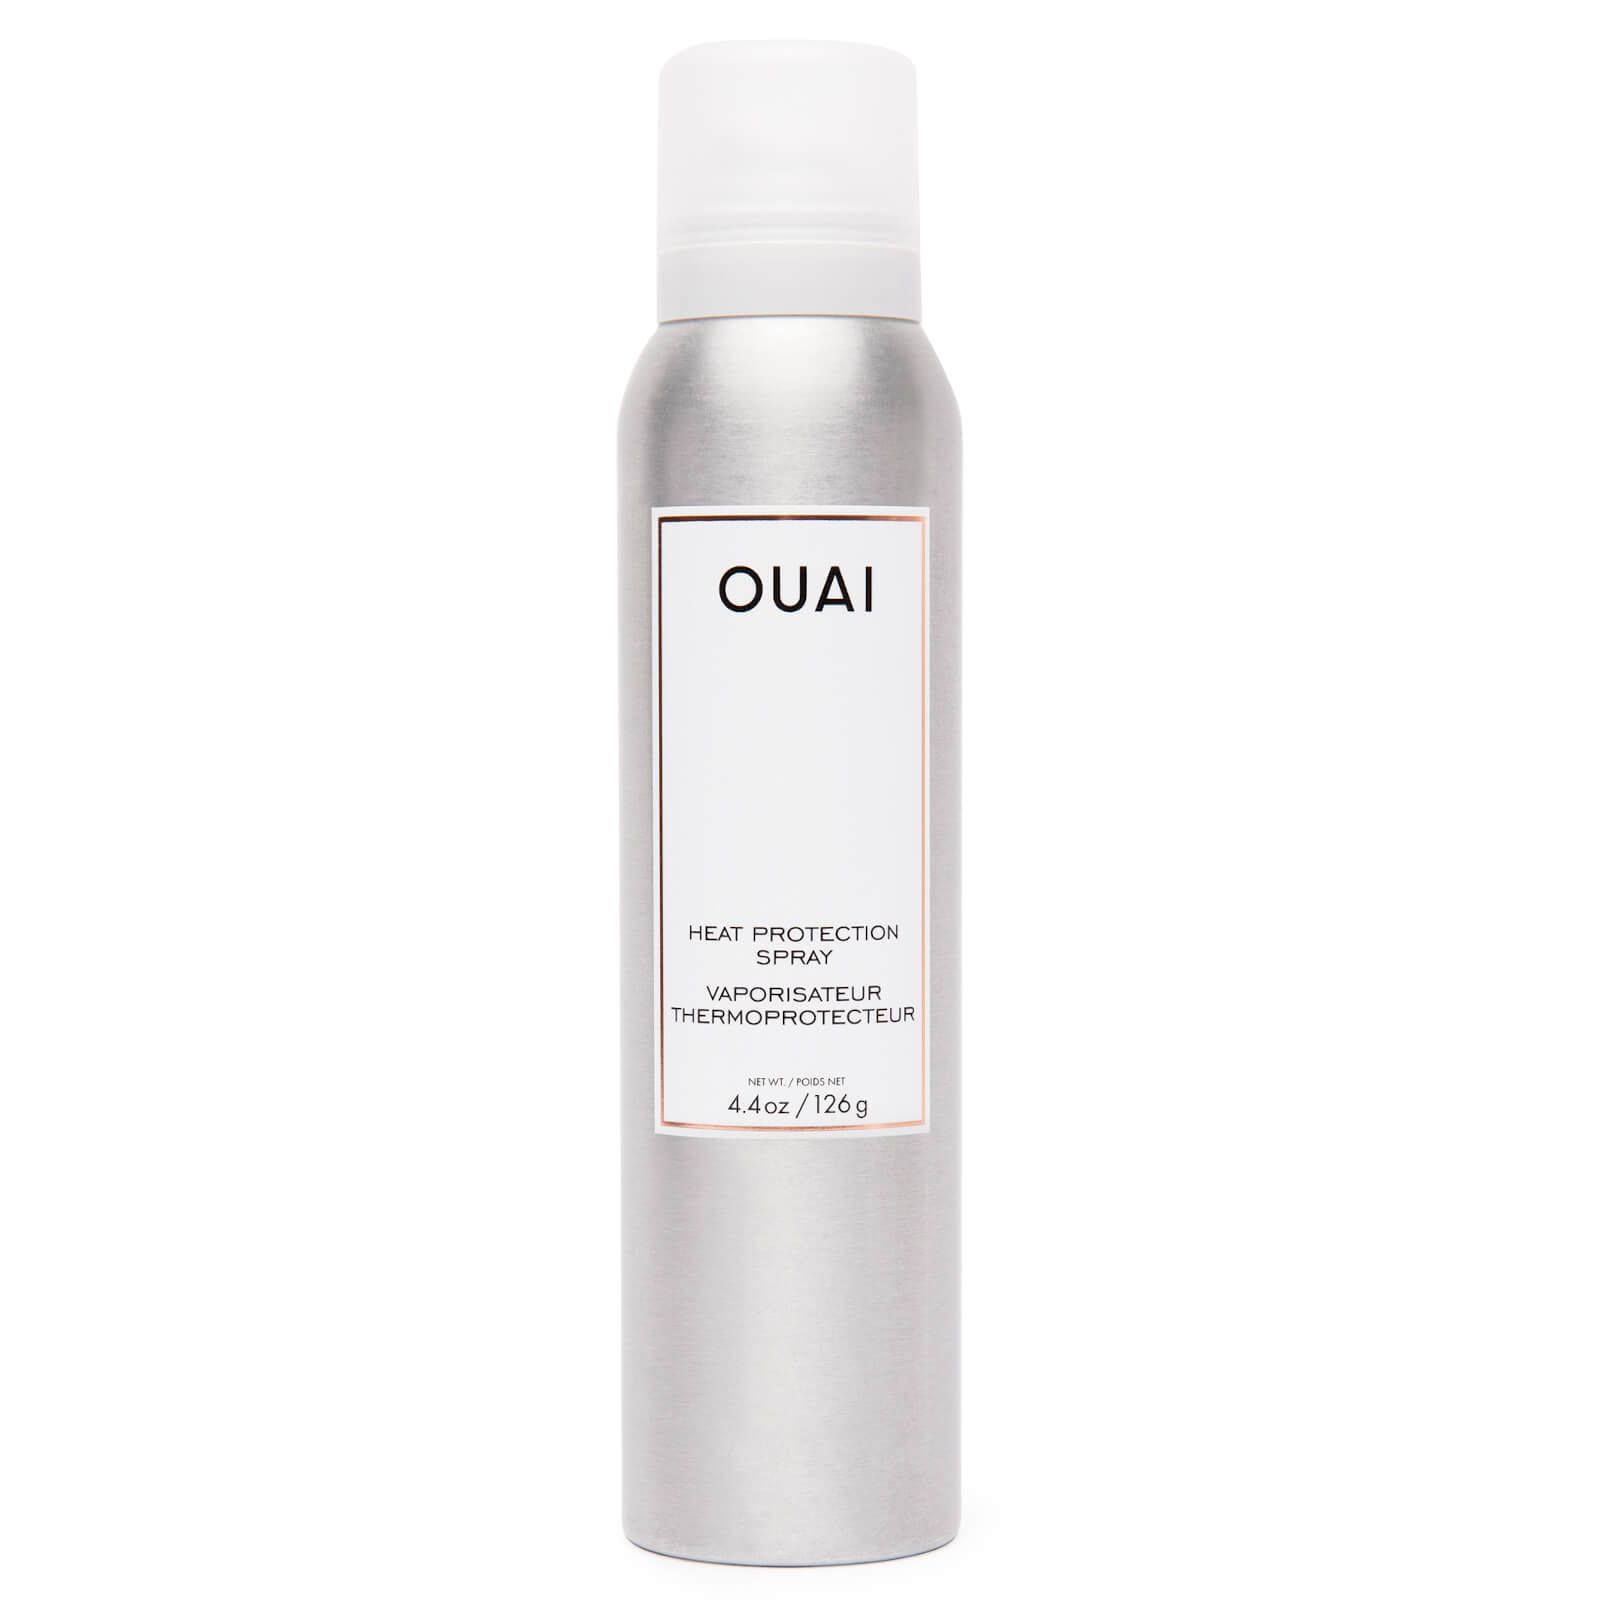 OUAI Heat Protection Spray 126ml | Cult Beauty (Global)